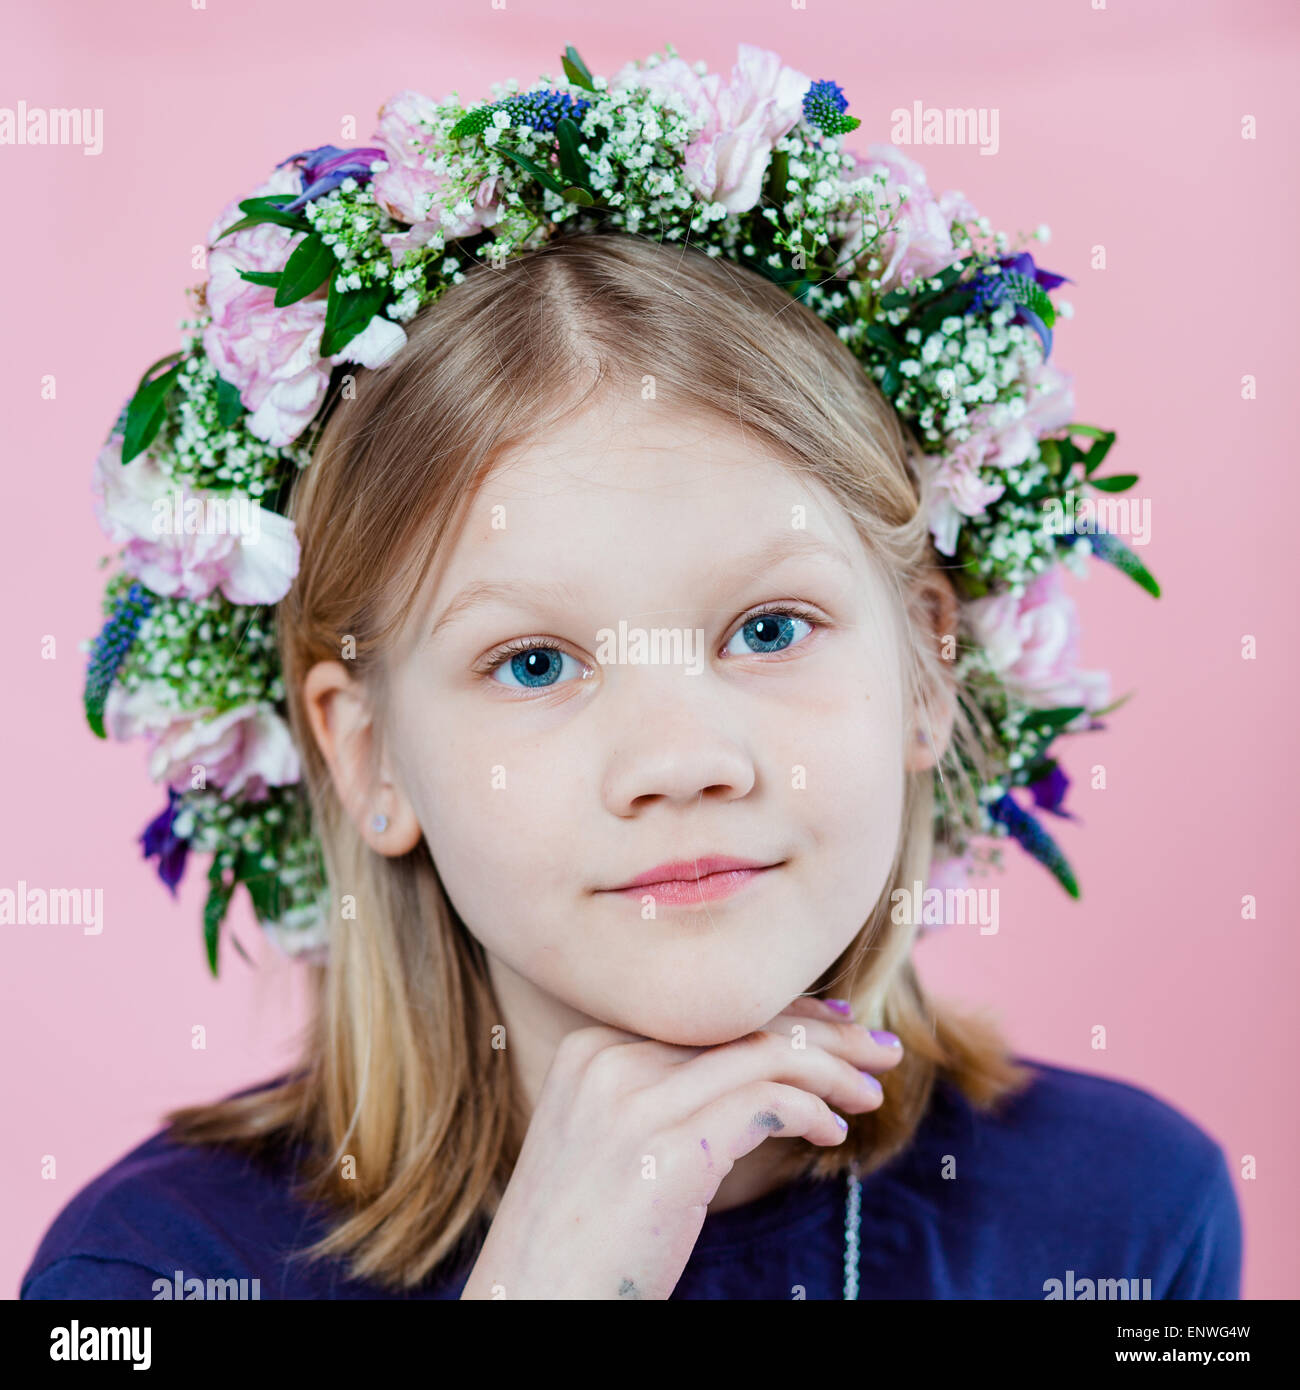 Porträt von einem netten Mädchen mit einer Blumengirlande auf ihr Haar Stockfoto